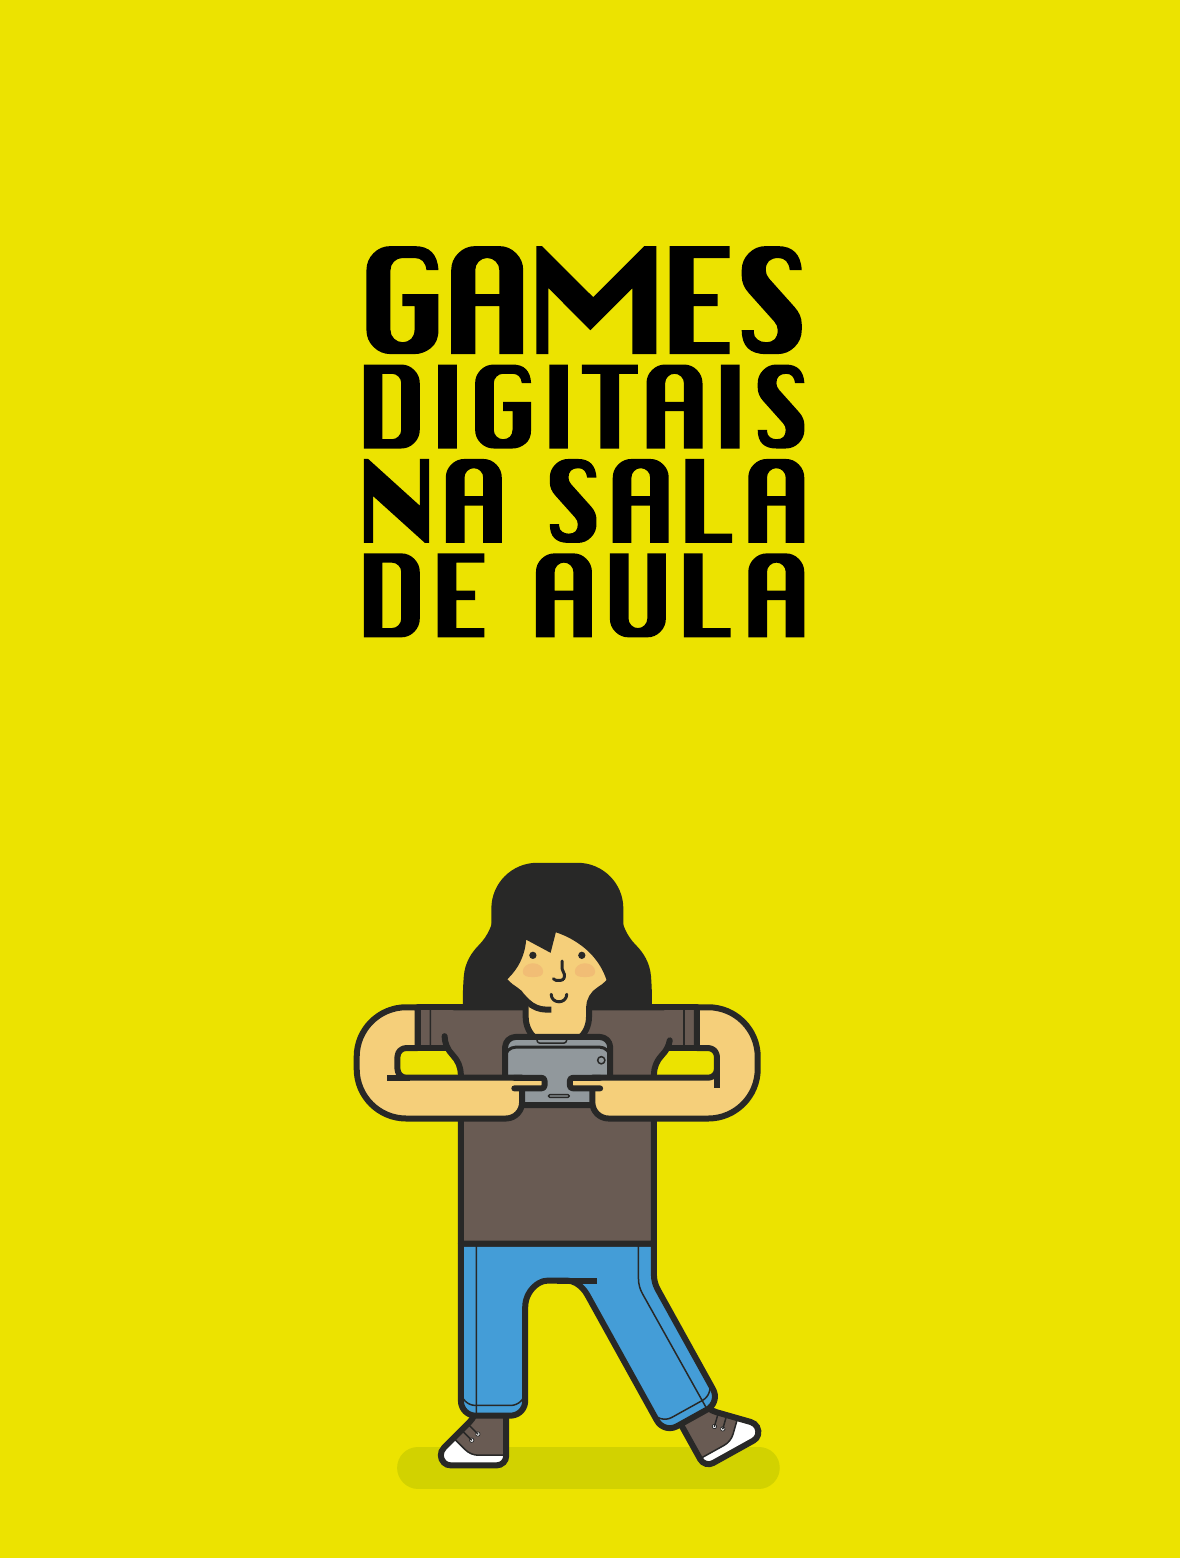 Fiocraft: jogo online vai ter campus da Fiocruz como cenário